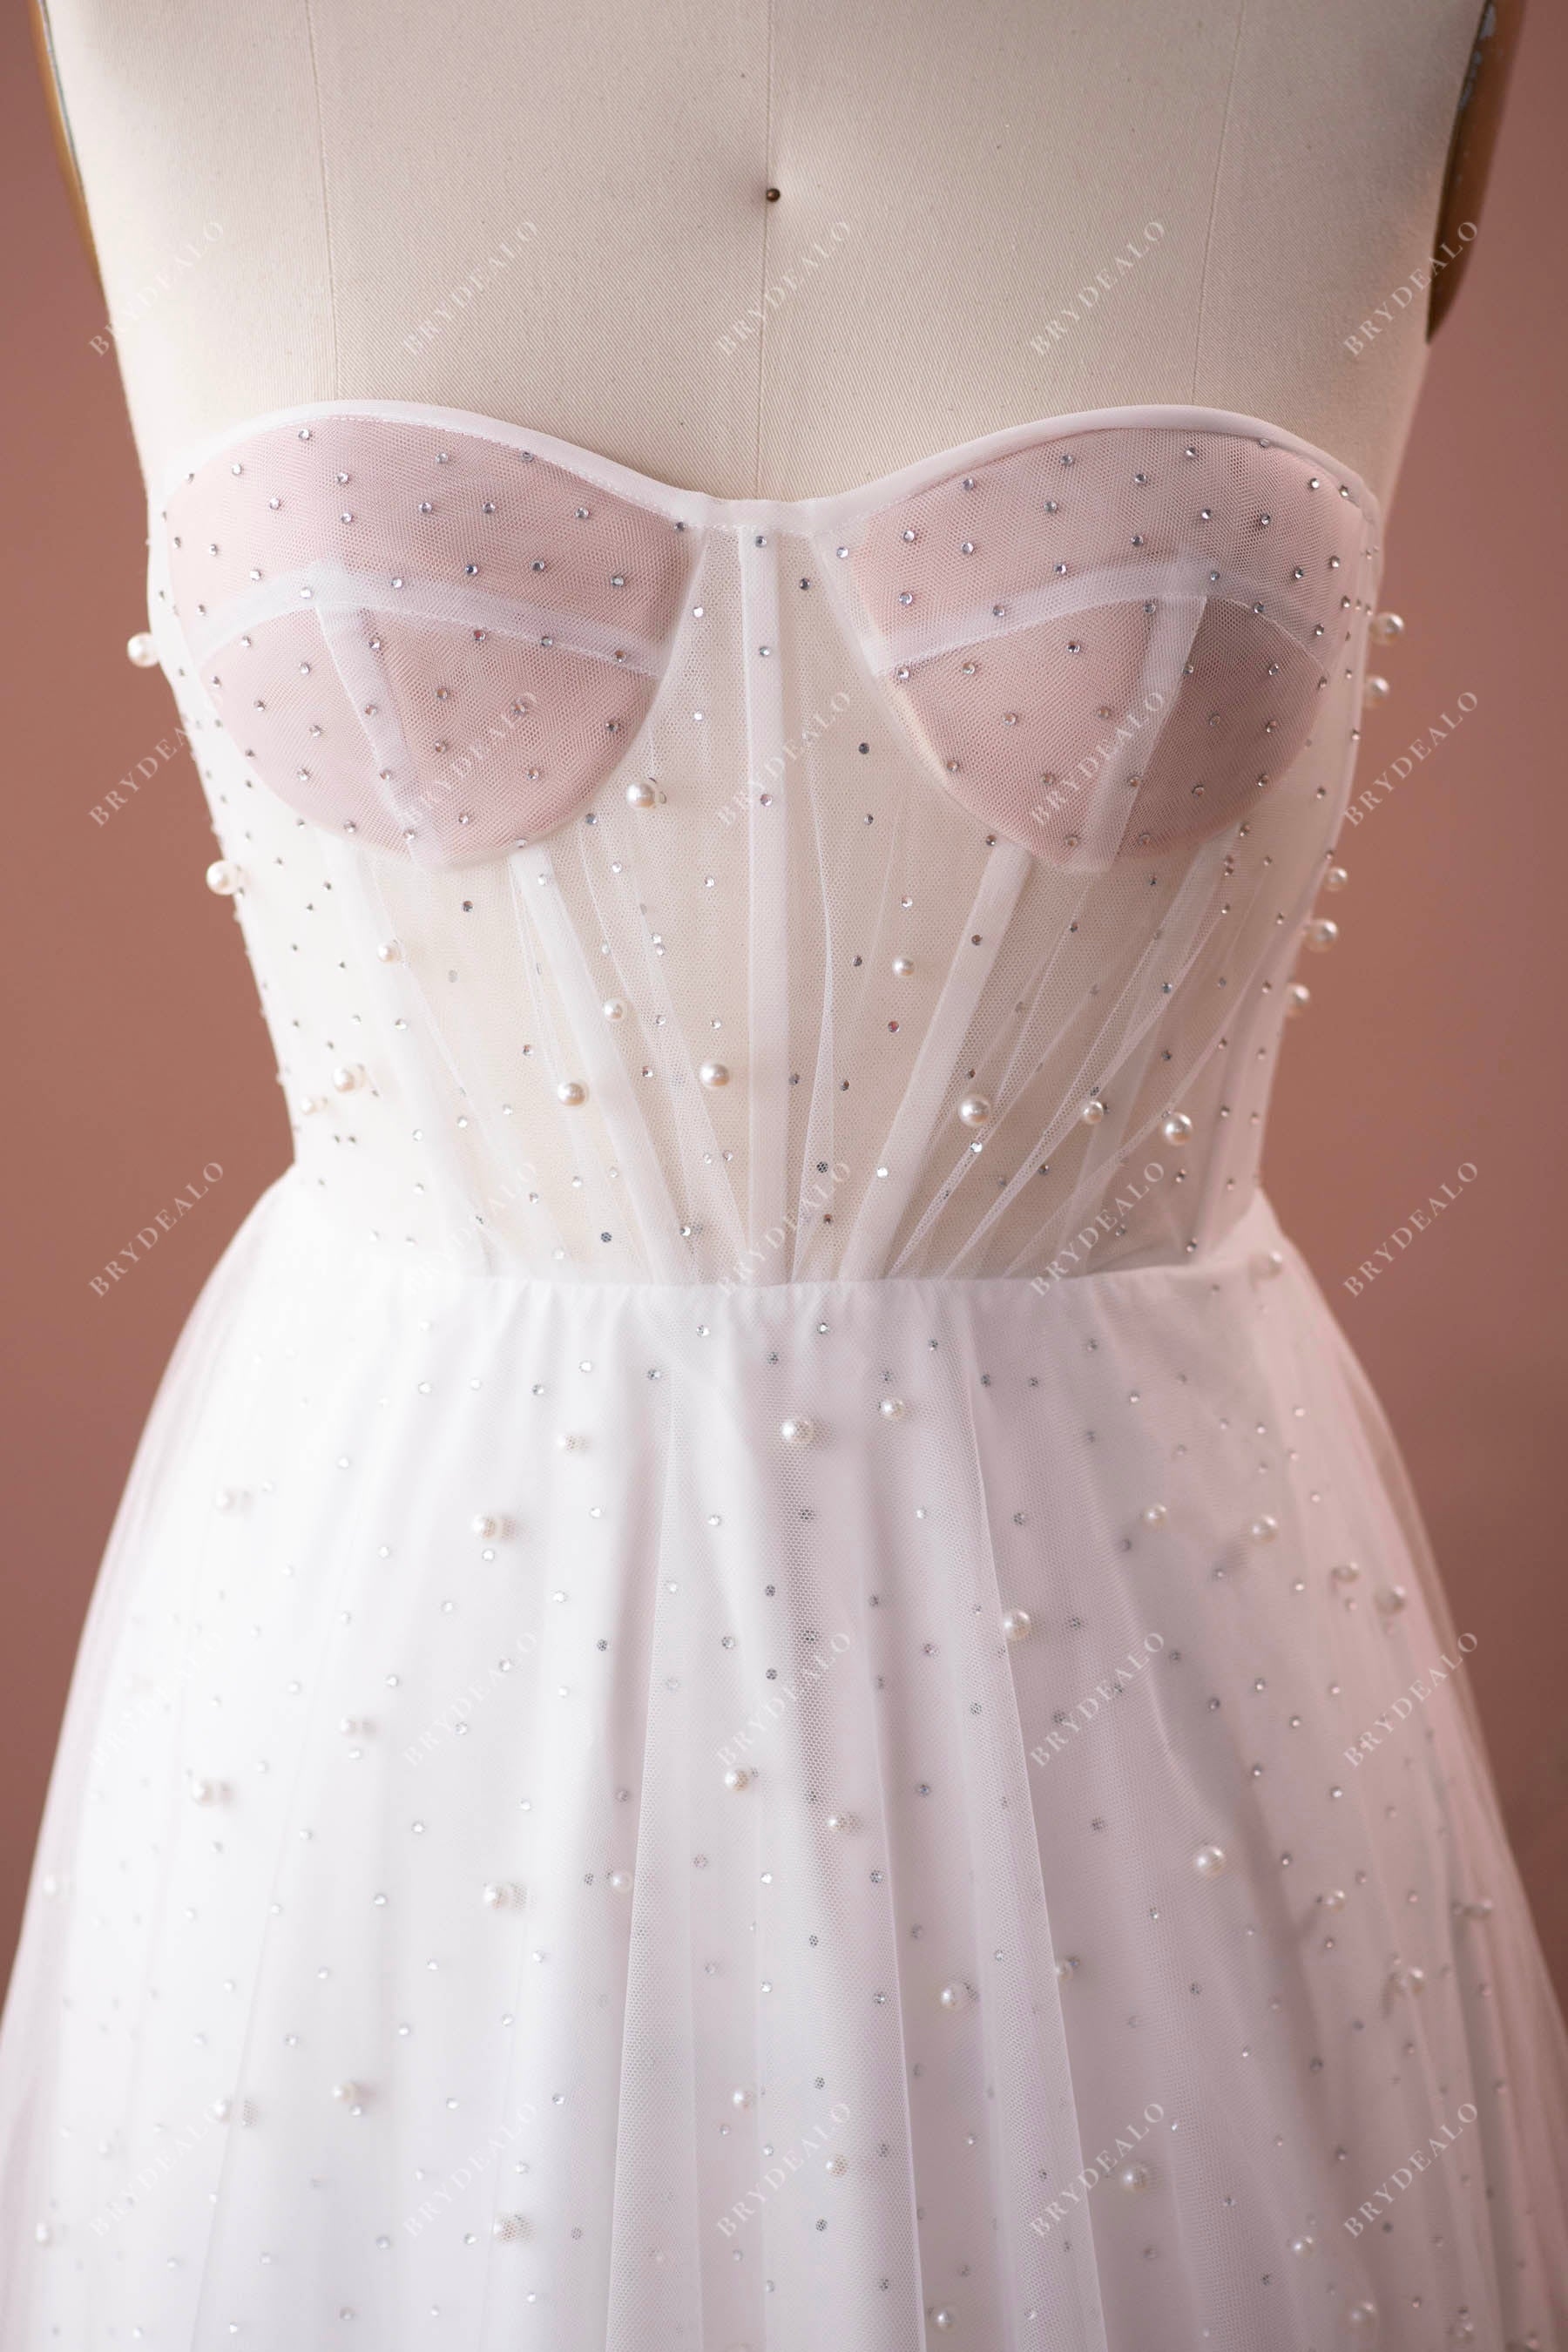 sweetheart neck strapless corset modern wedding dress